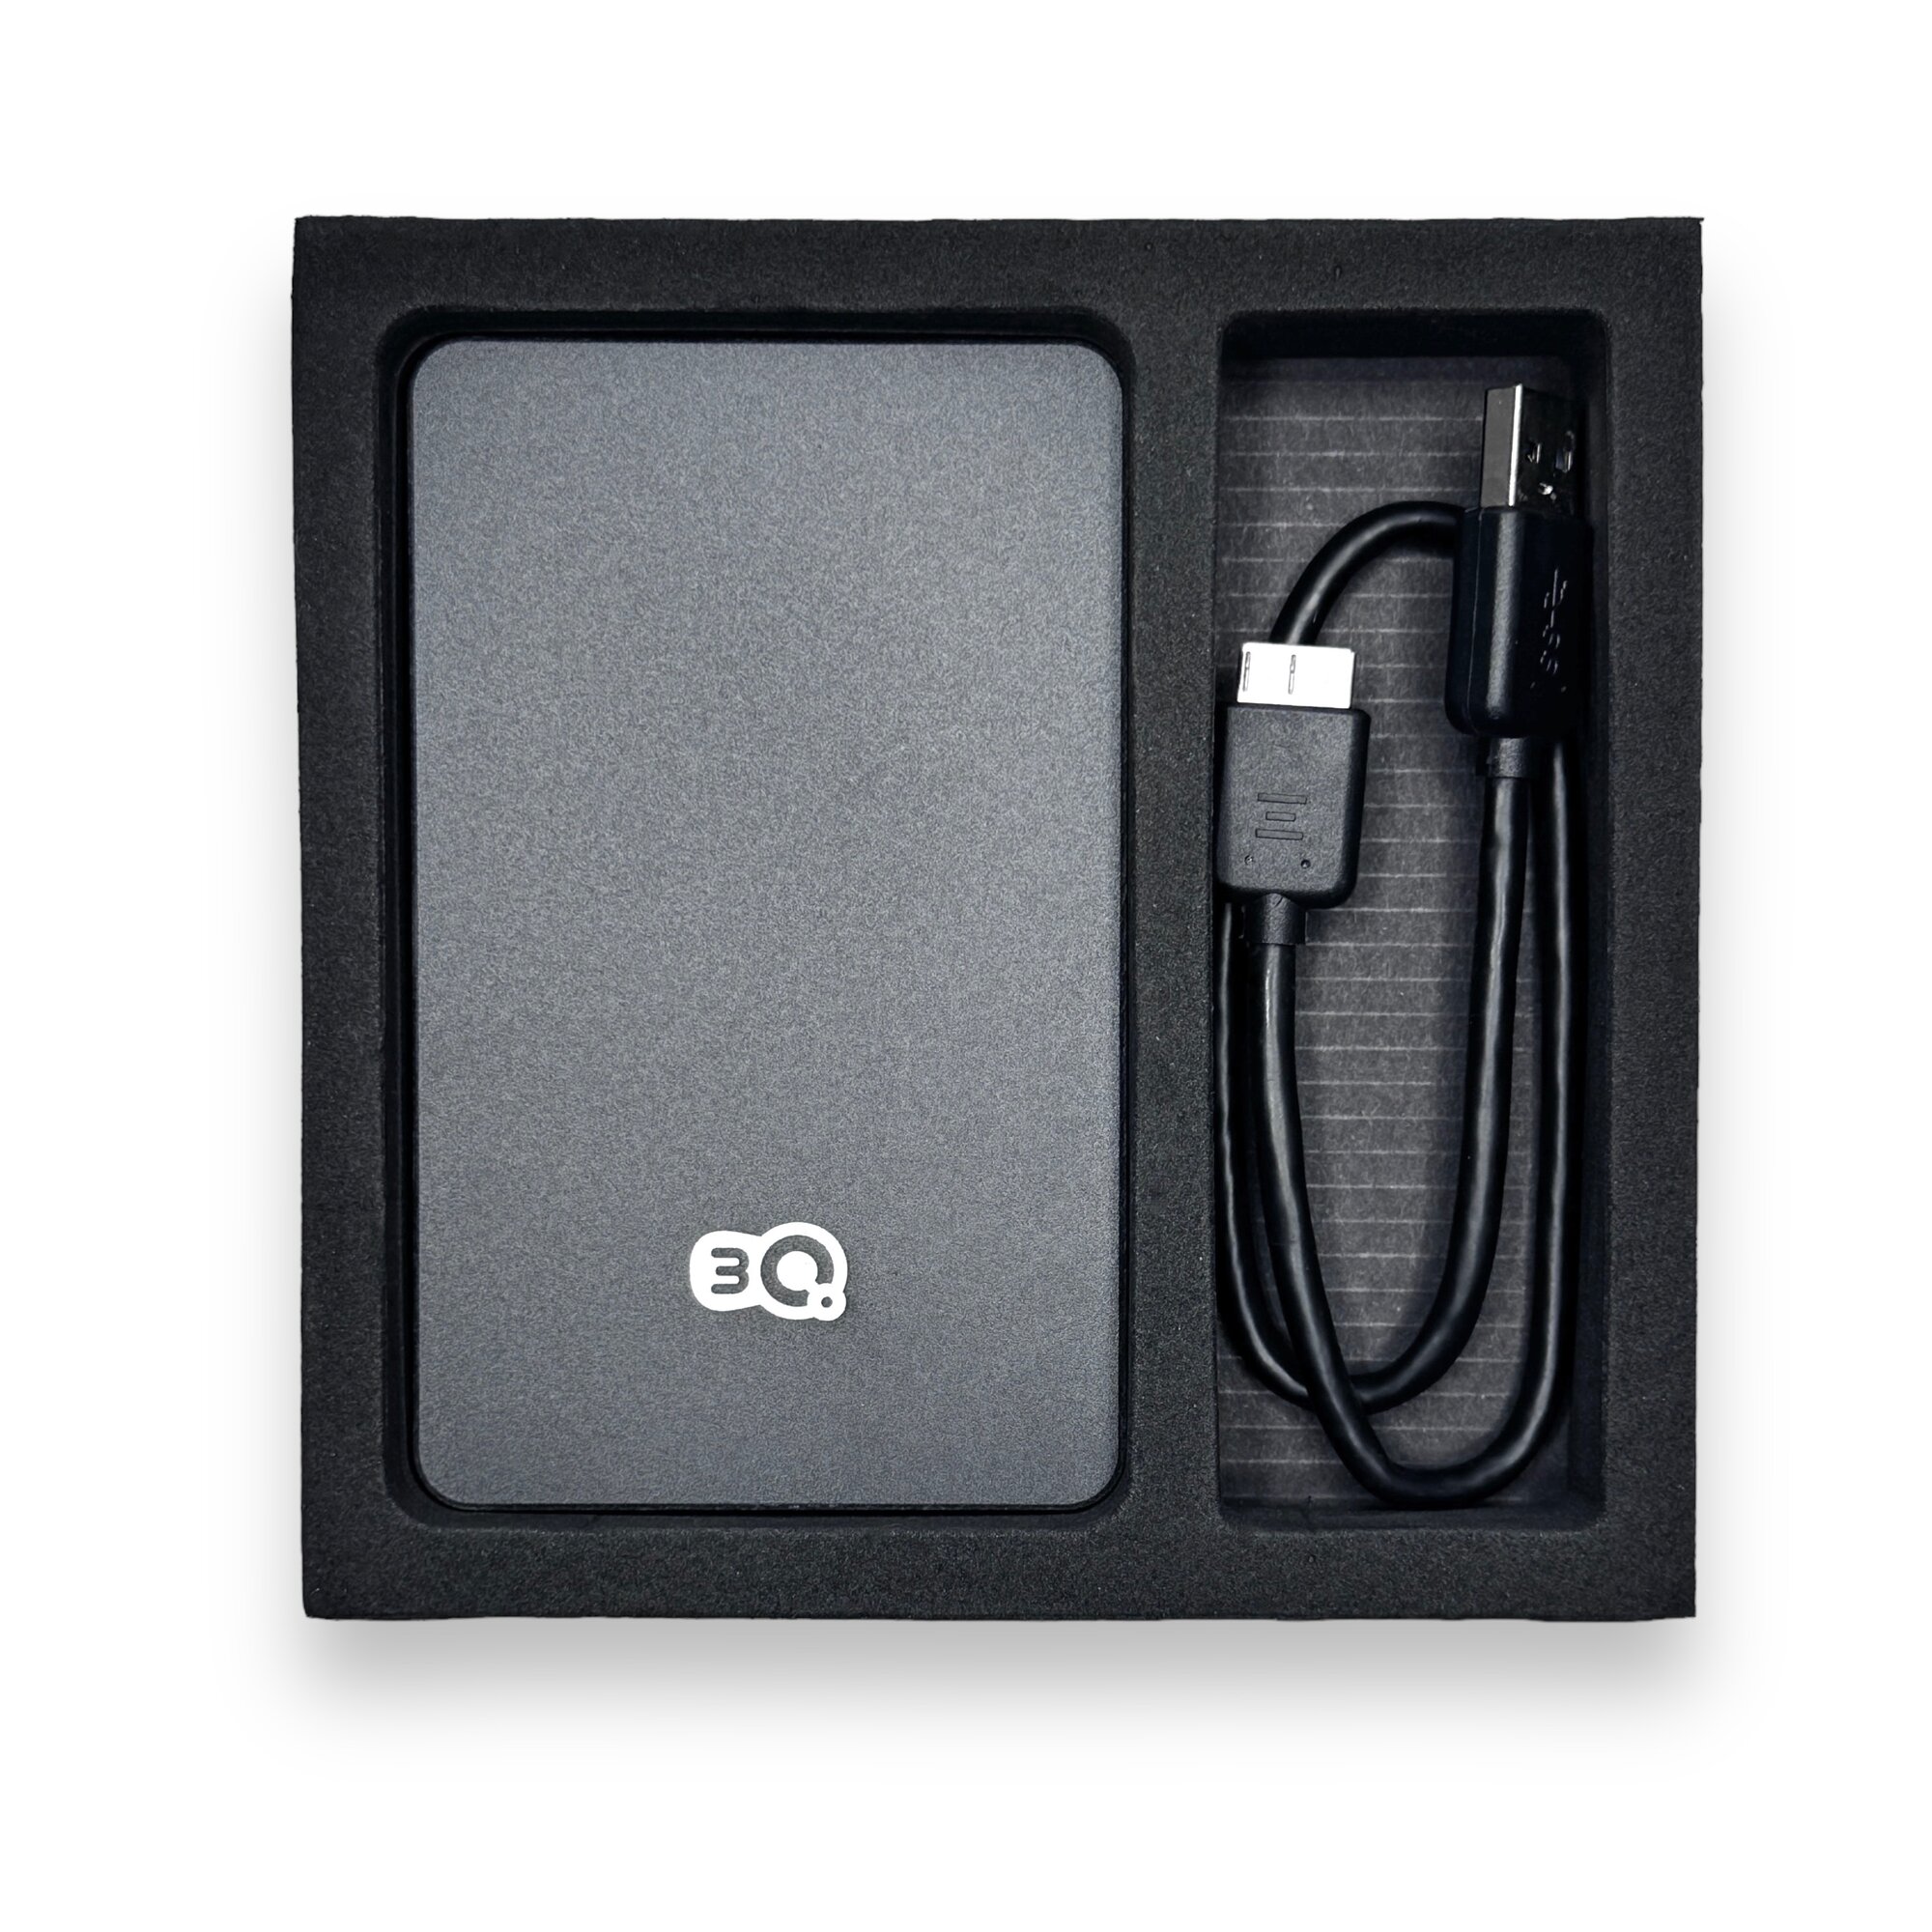 Внешний жесткий диск TLC Metallic 500 Гб HDD 2,5" накопитель USB 3.0, Черный